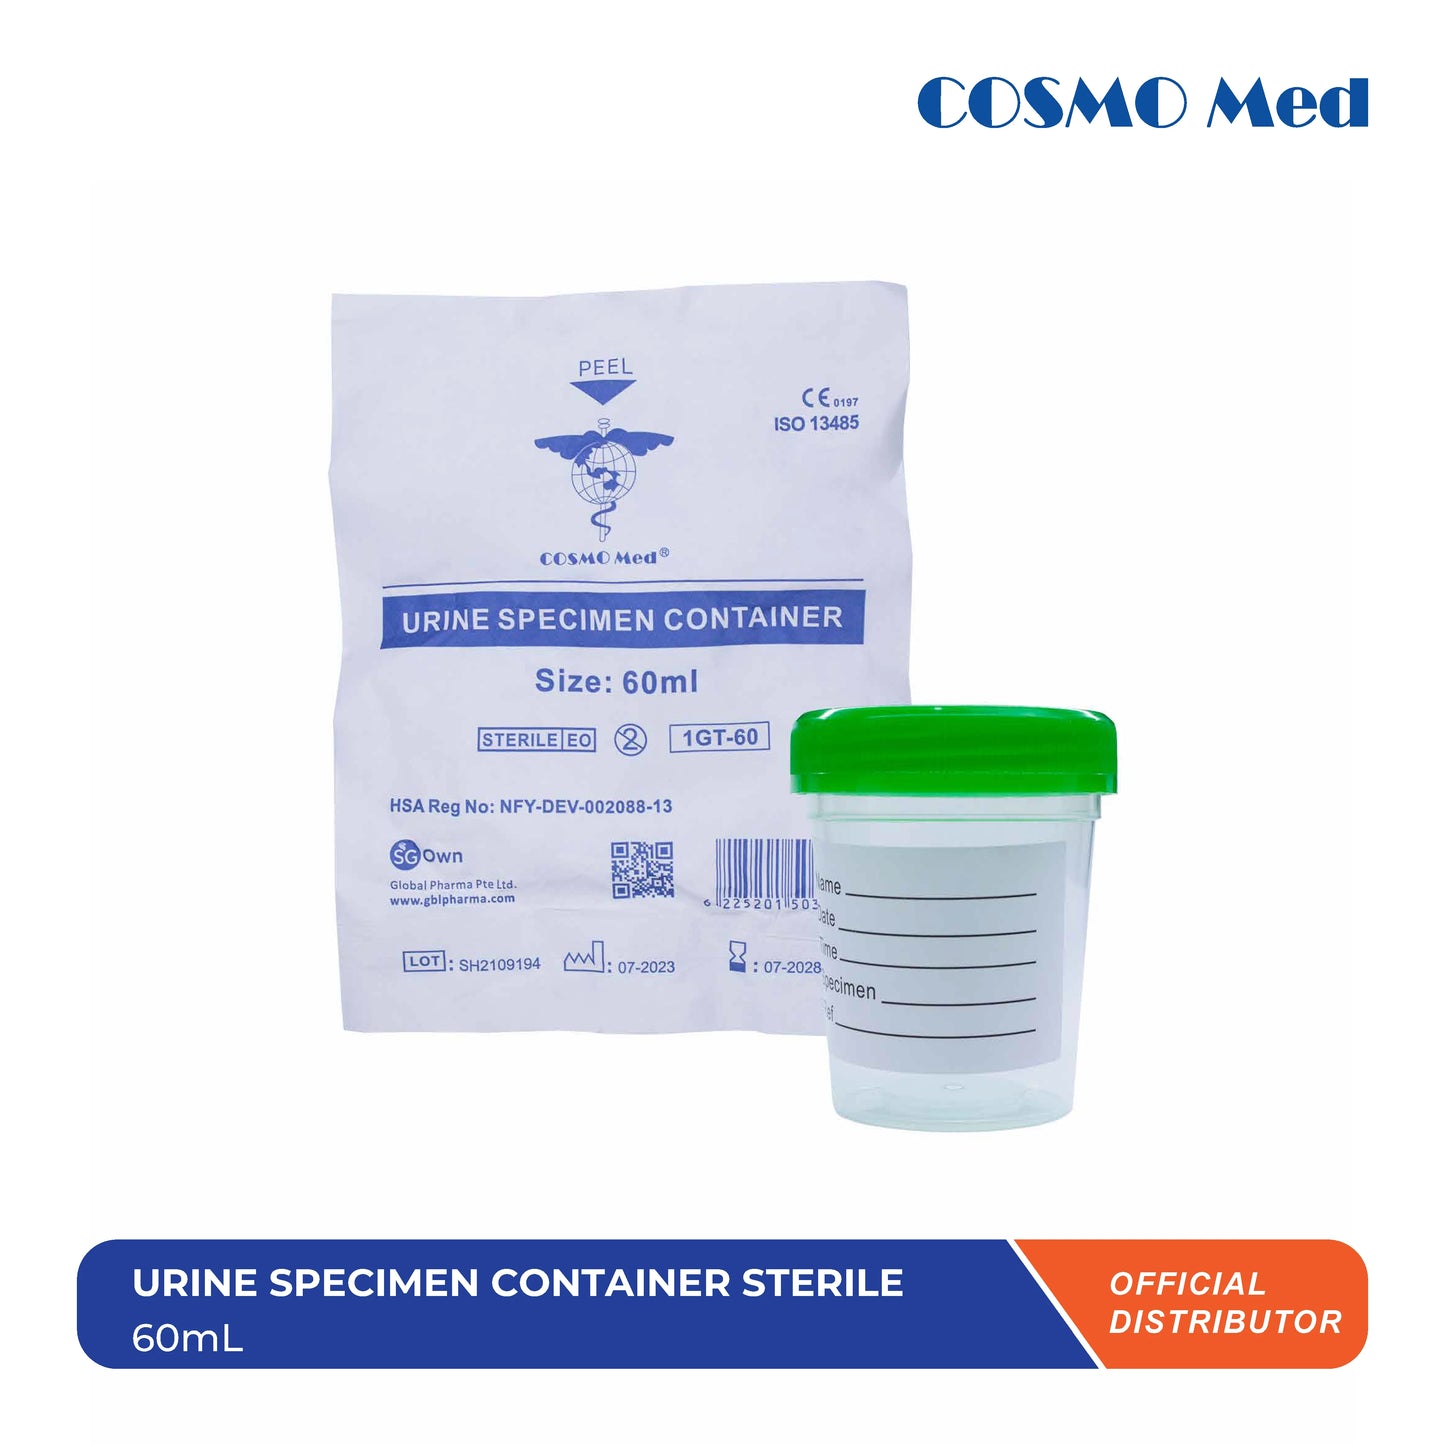 Urine Specimen Container Sterile